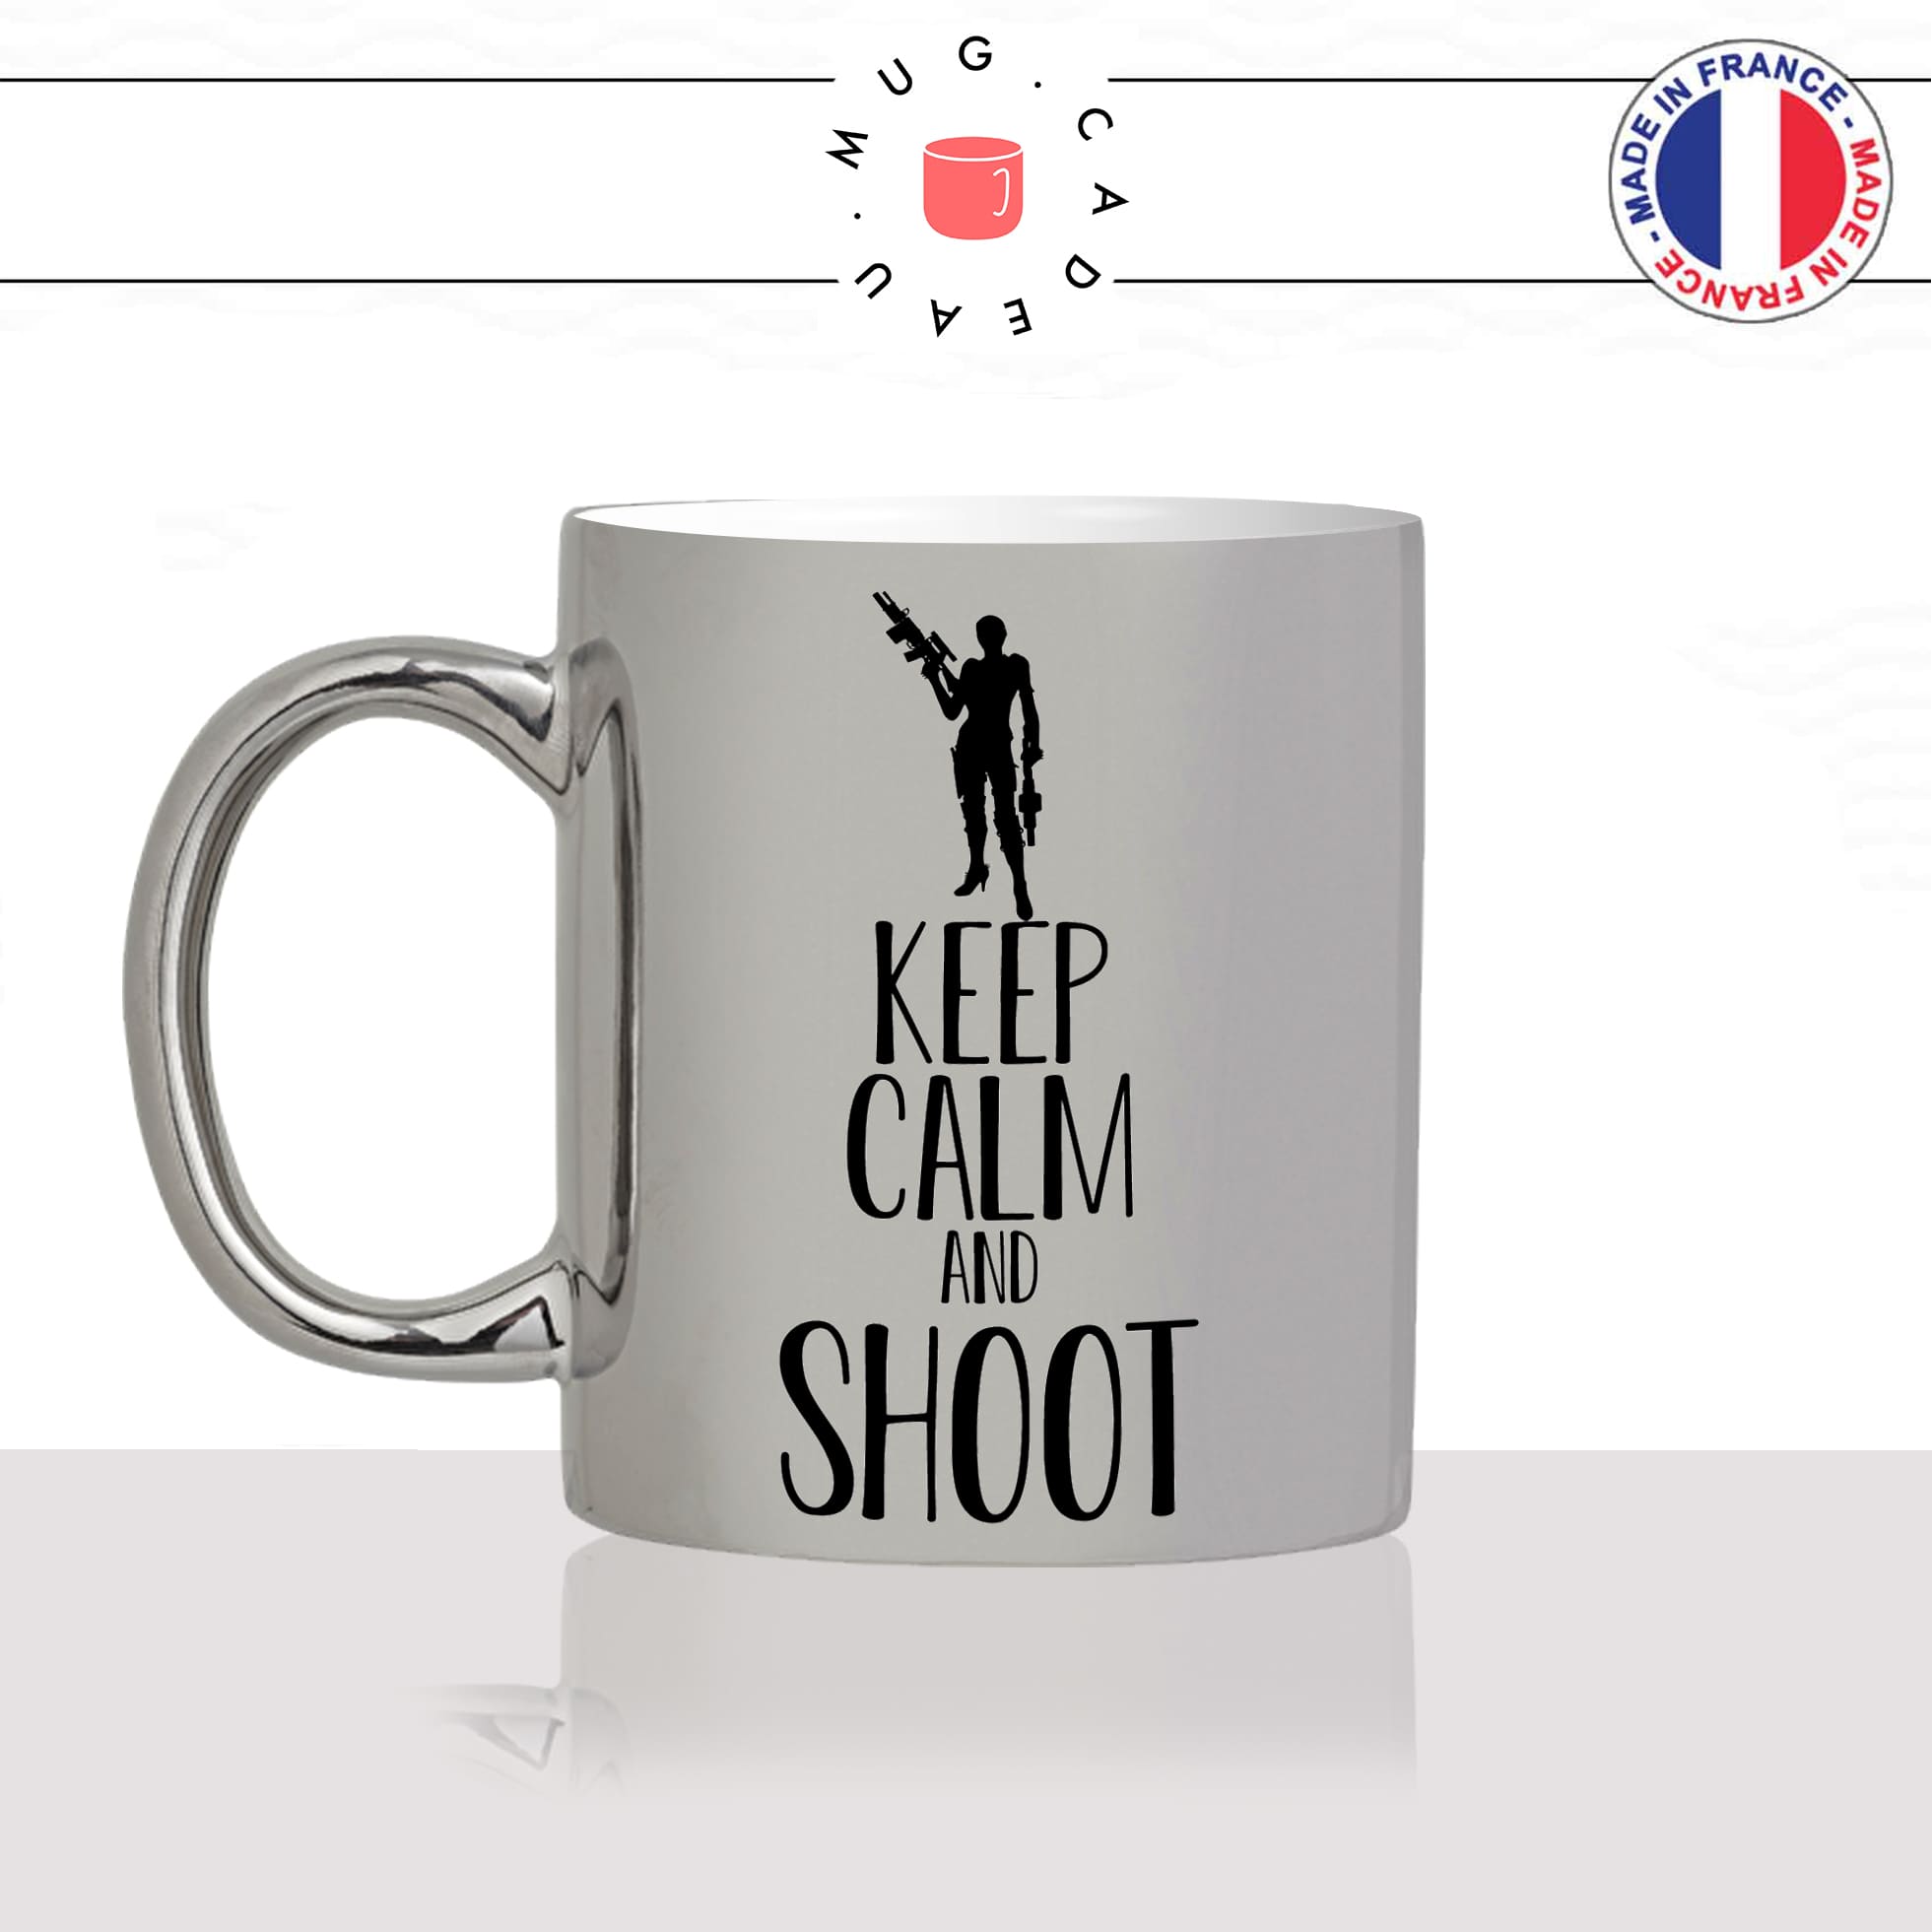 mug-tasse-argent-argenté-silver-keep-calm-and-shoot-tir-arme-fusil-beretta-pompe-femme-stylé-humour-idée-cadeau-fun-cool-café-thé